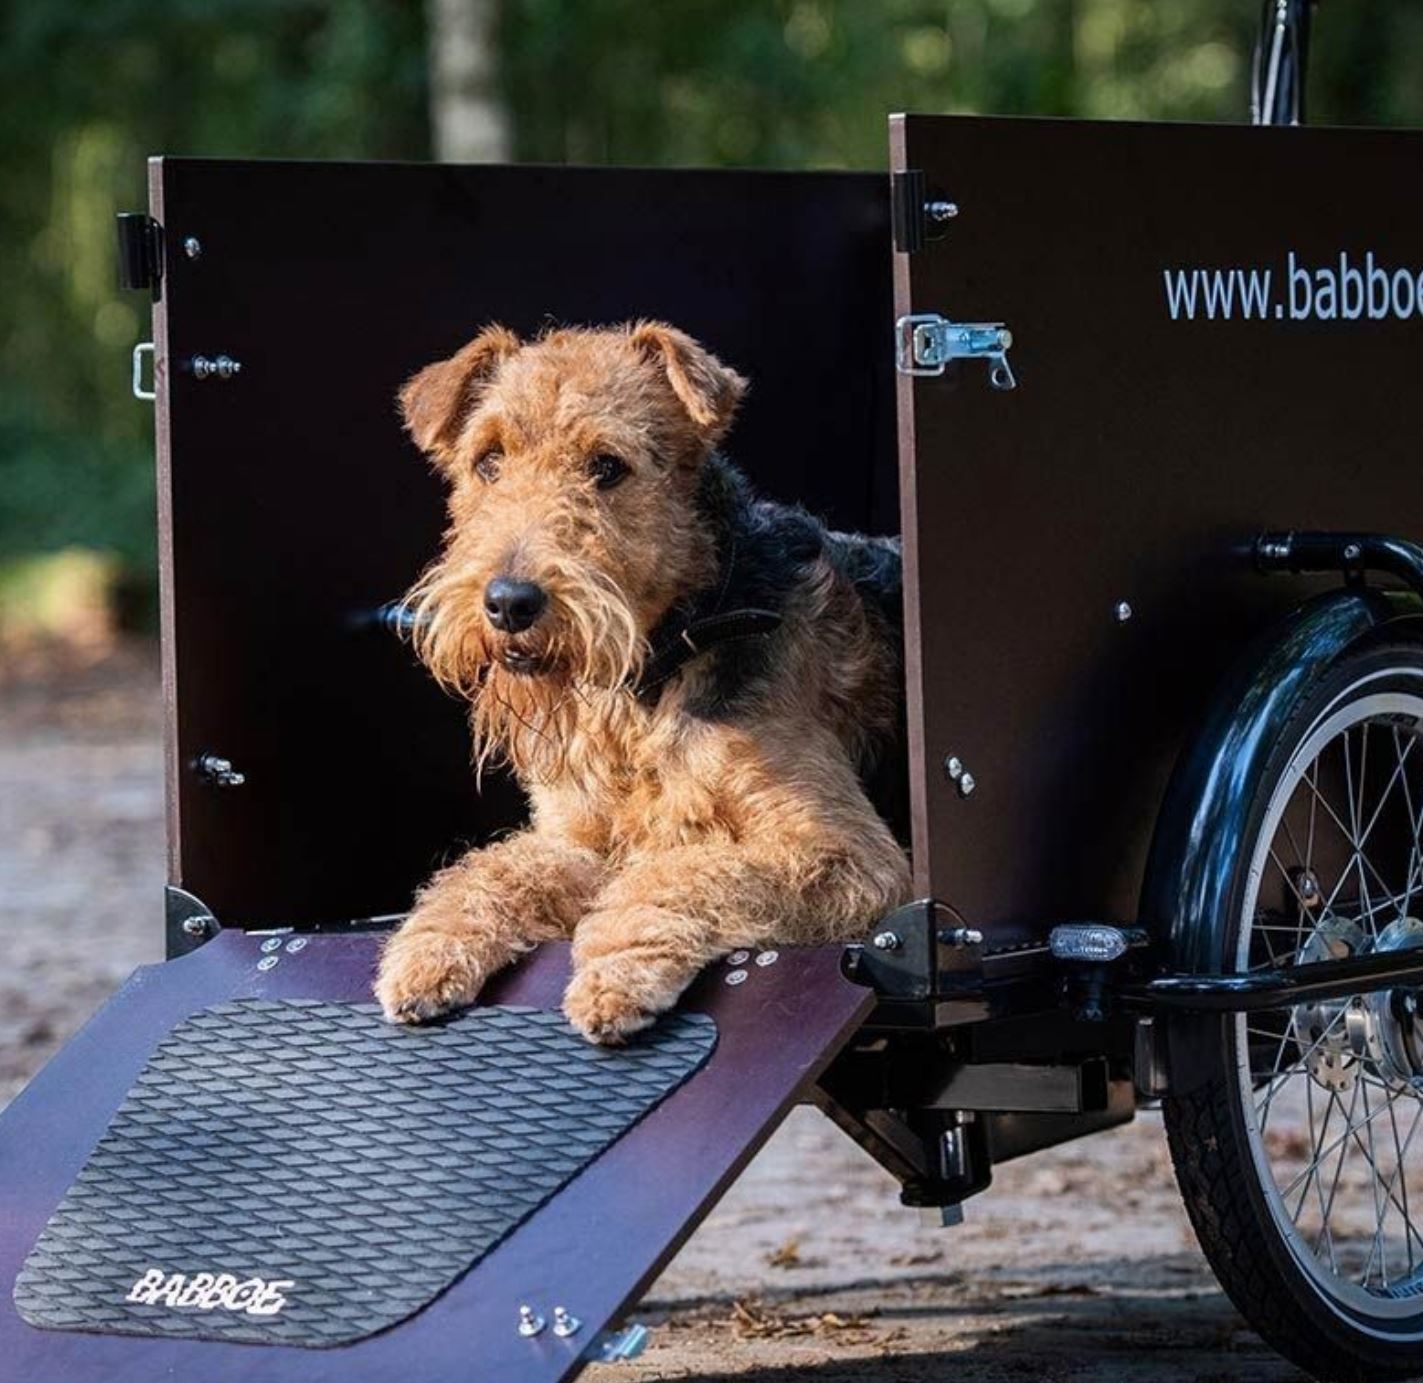 Babboe "Dog-E" 500